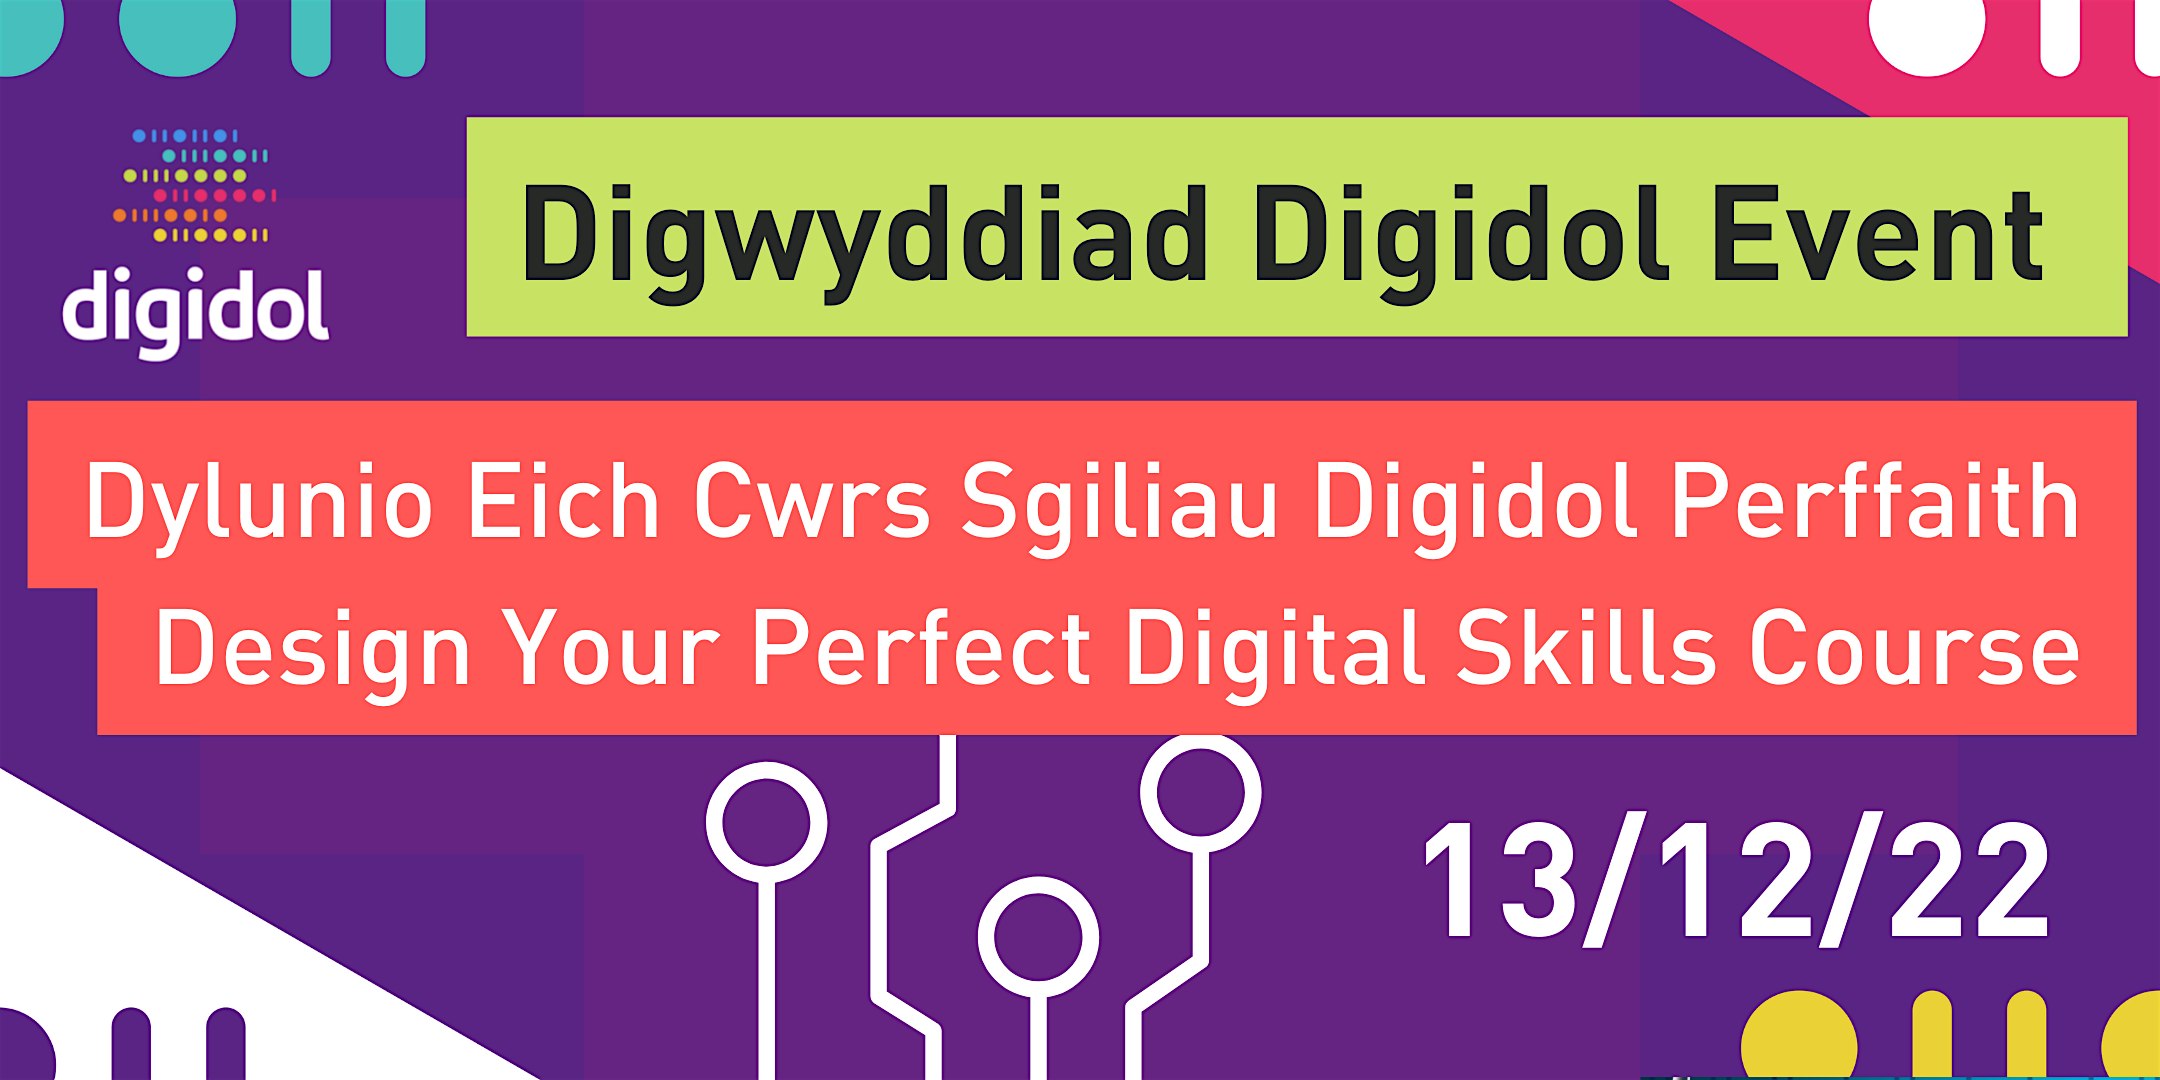 Dyluniwch Eich Cwrs Sgiliau Digidol/Design Your Own Digital Skills Course